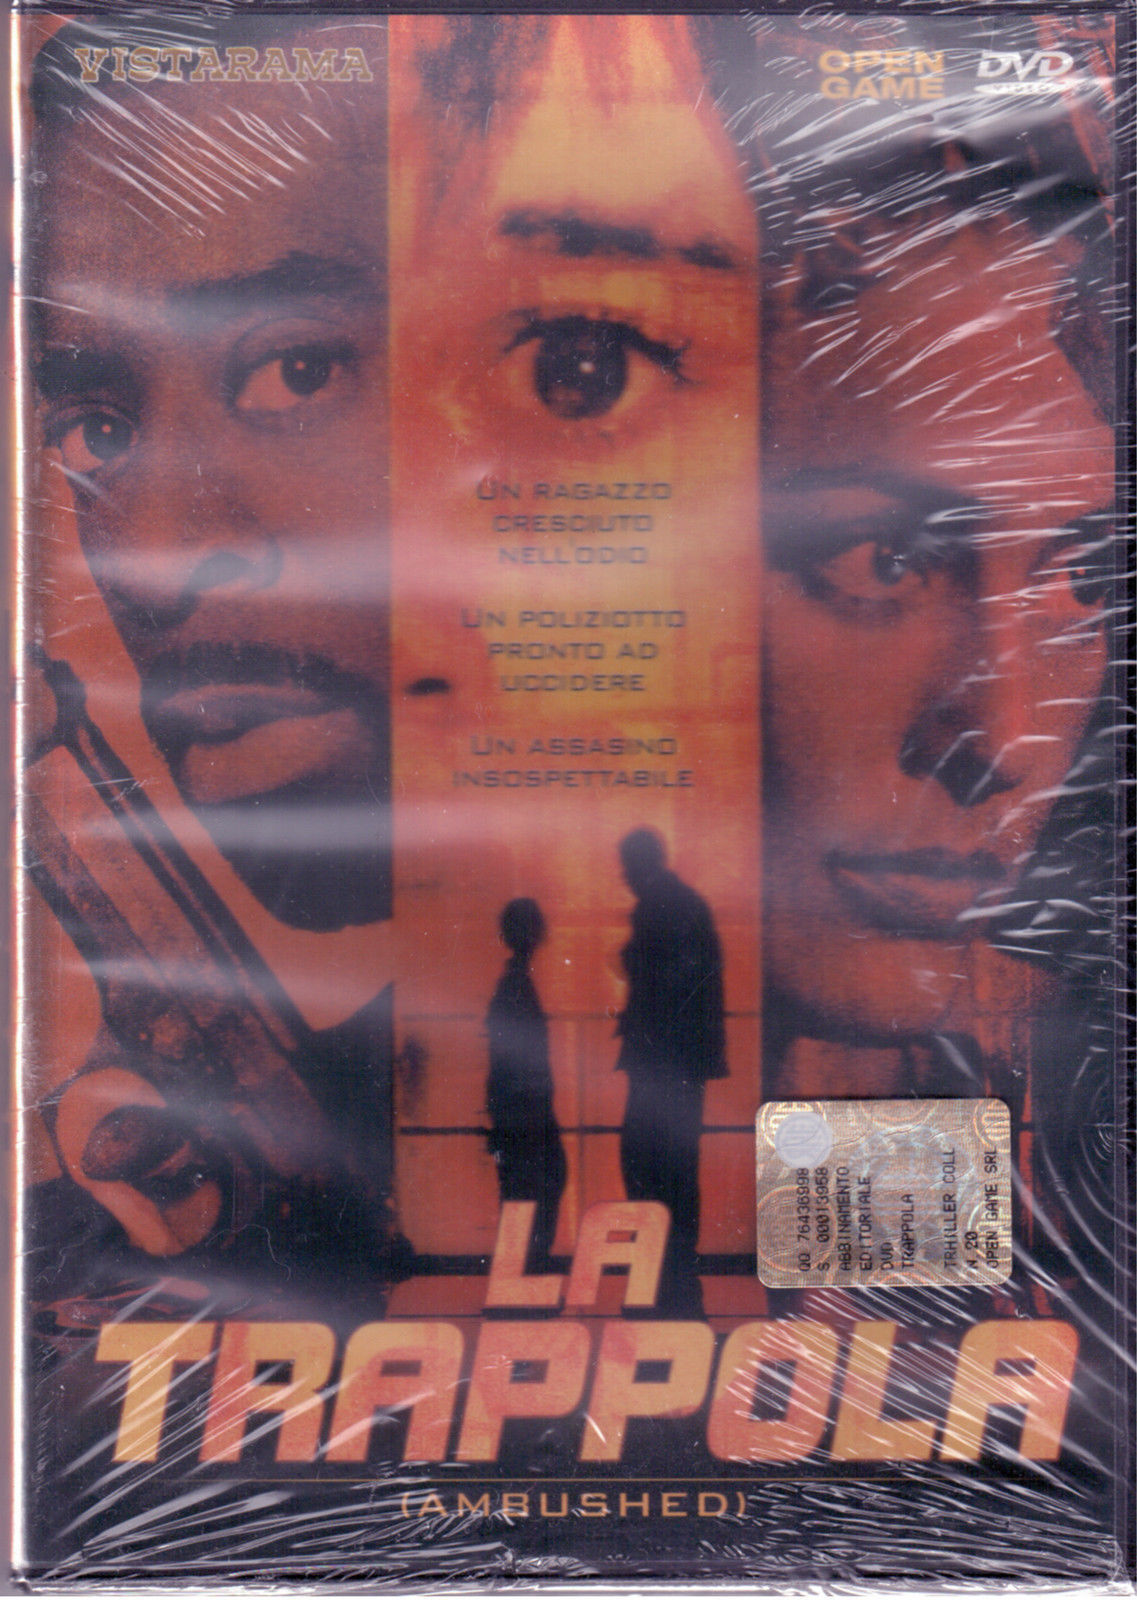 LA TRAPPOLA - Ernest Dickerson -VISTARAMA - 1998 - DVD - M dvd usato